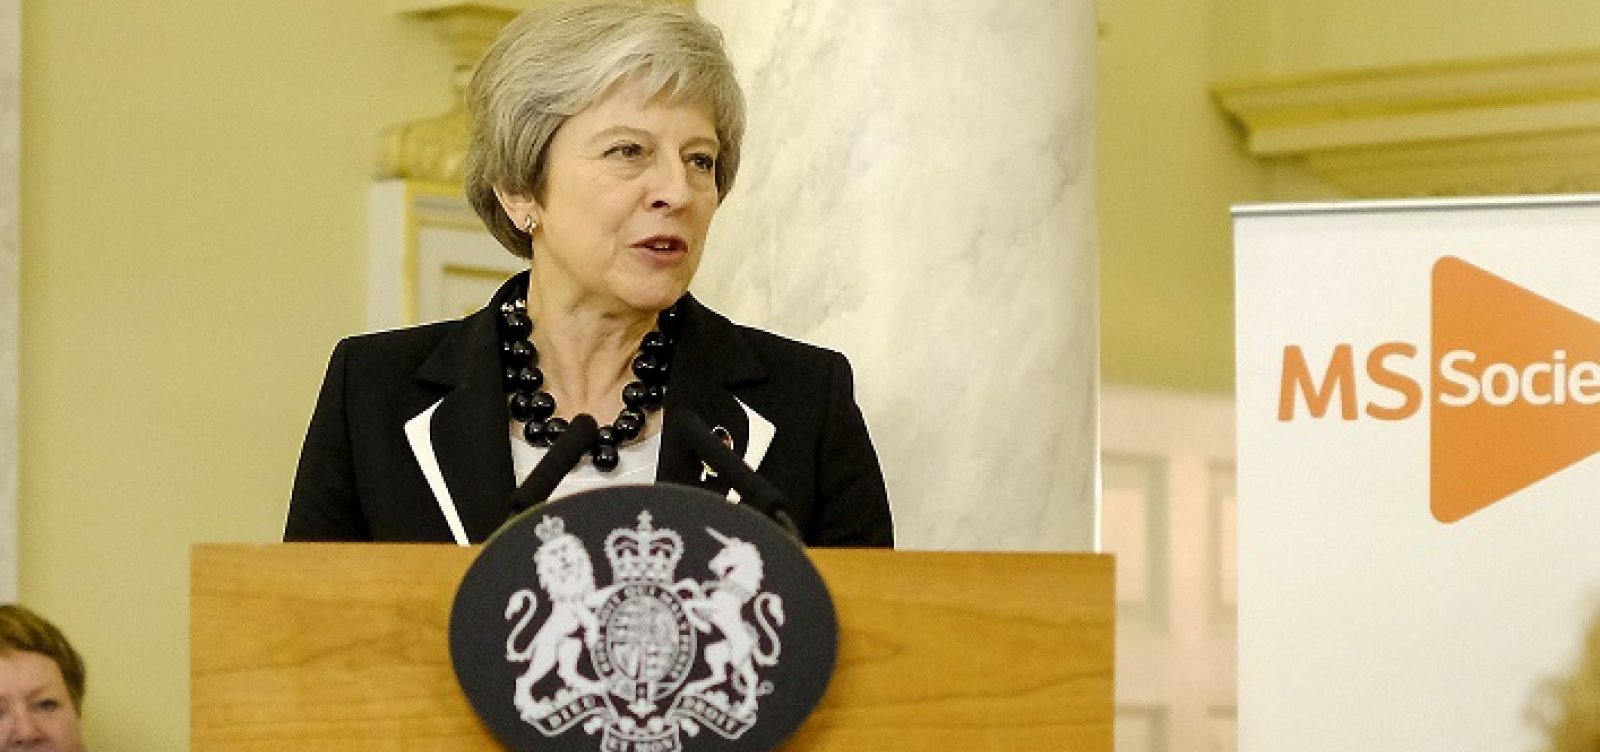 Após rejeição do Brexit, Theresa May enfrenta votação de moção de desconfiança